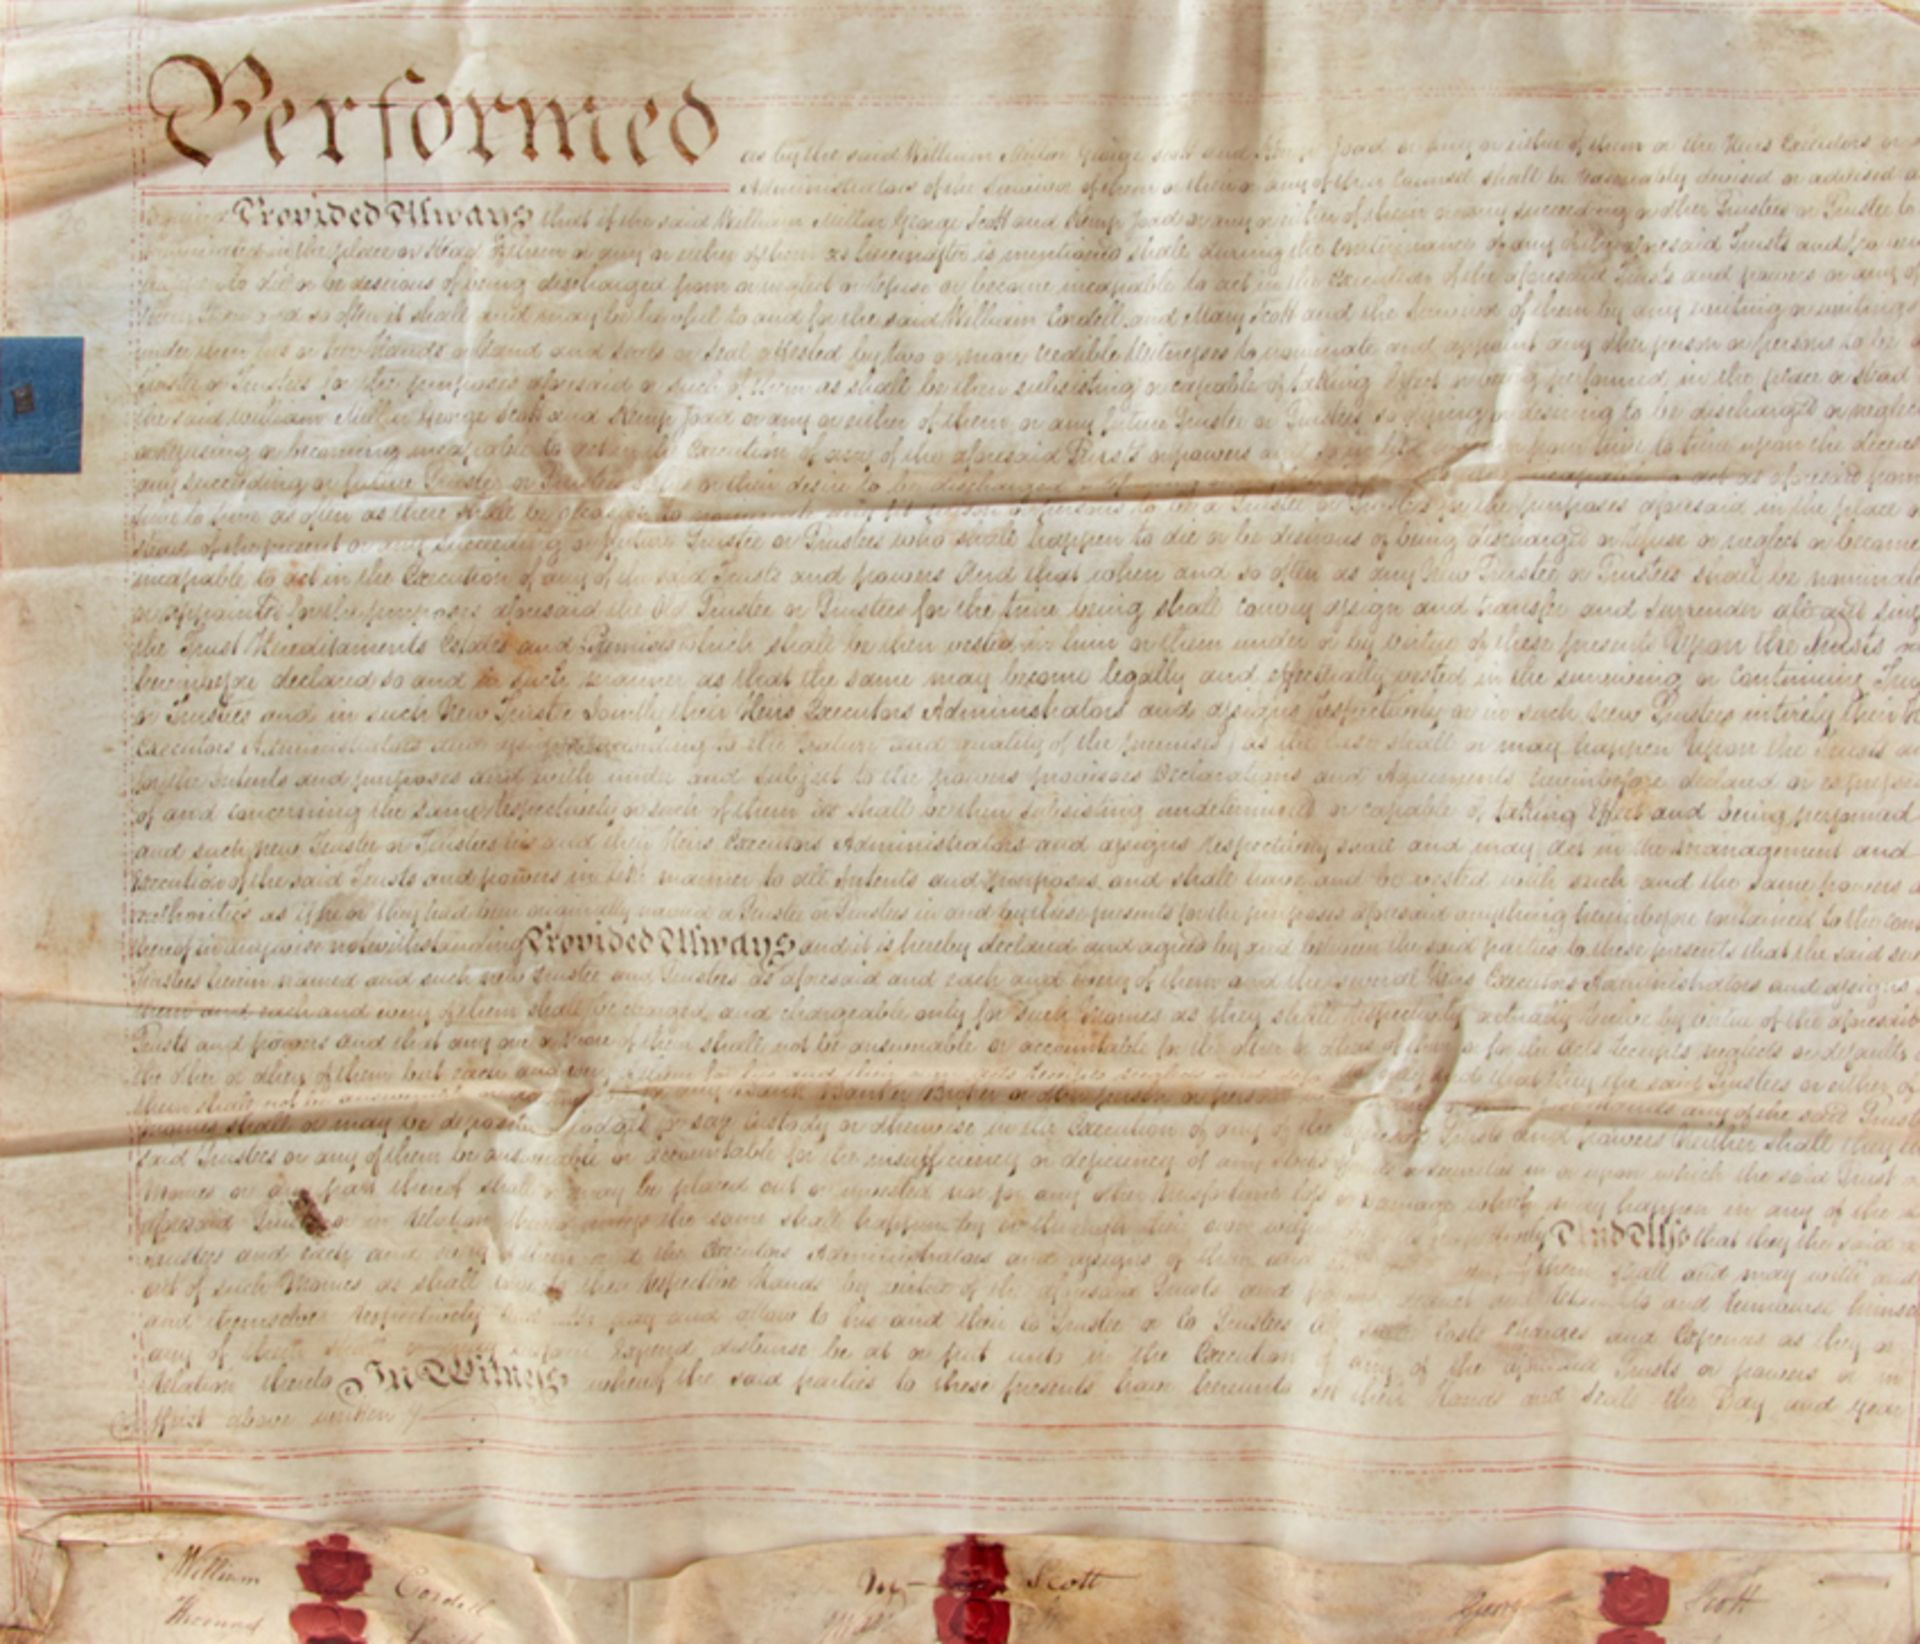 Heiratskontrakt - Englische Urkunde auf Pergament. Dat. London, 16. 10. 1817. 19 Bl. Blattgr.: